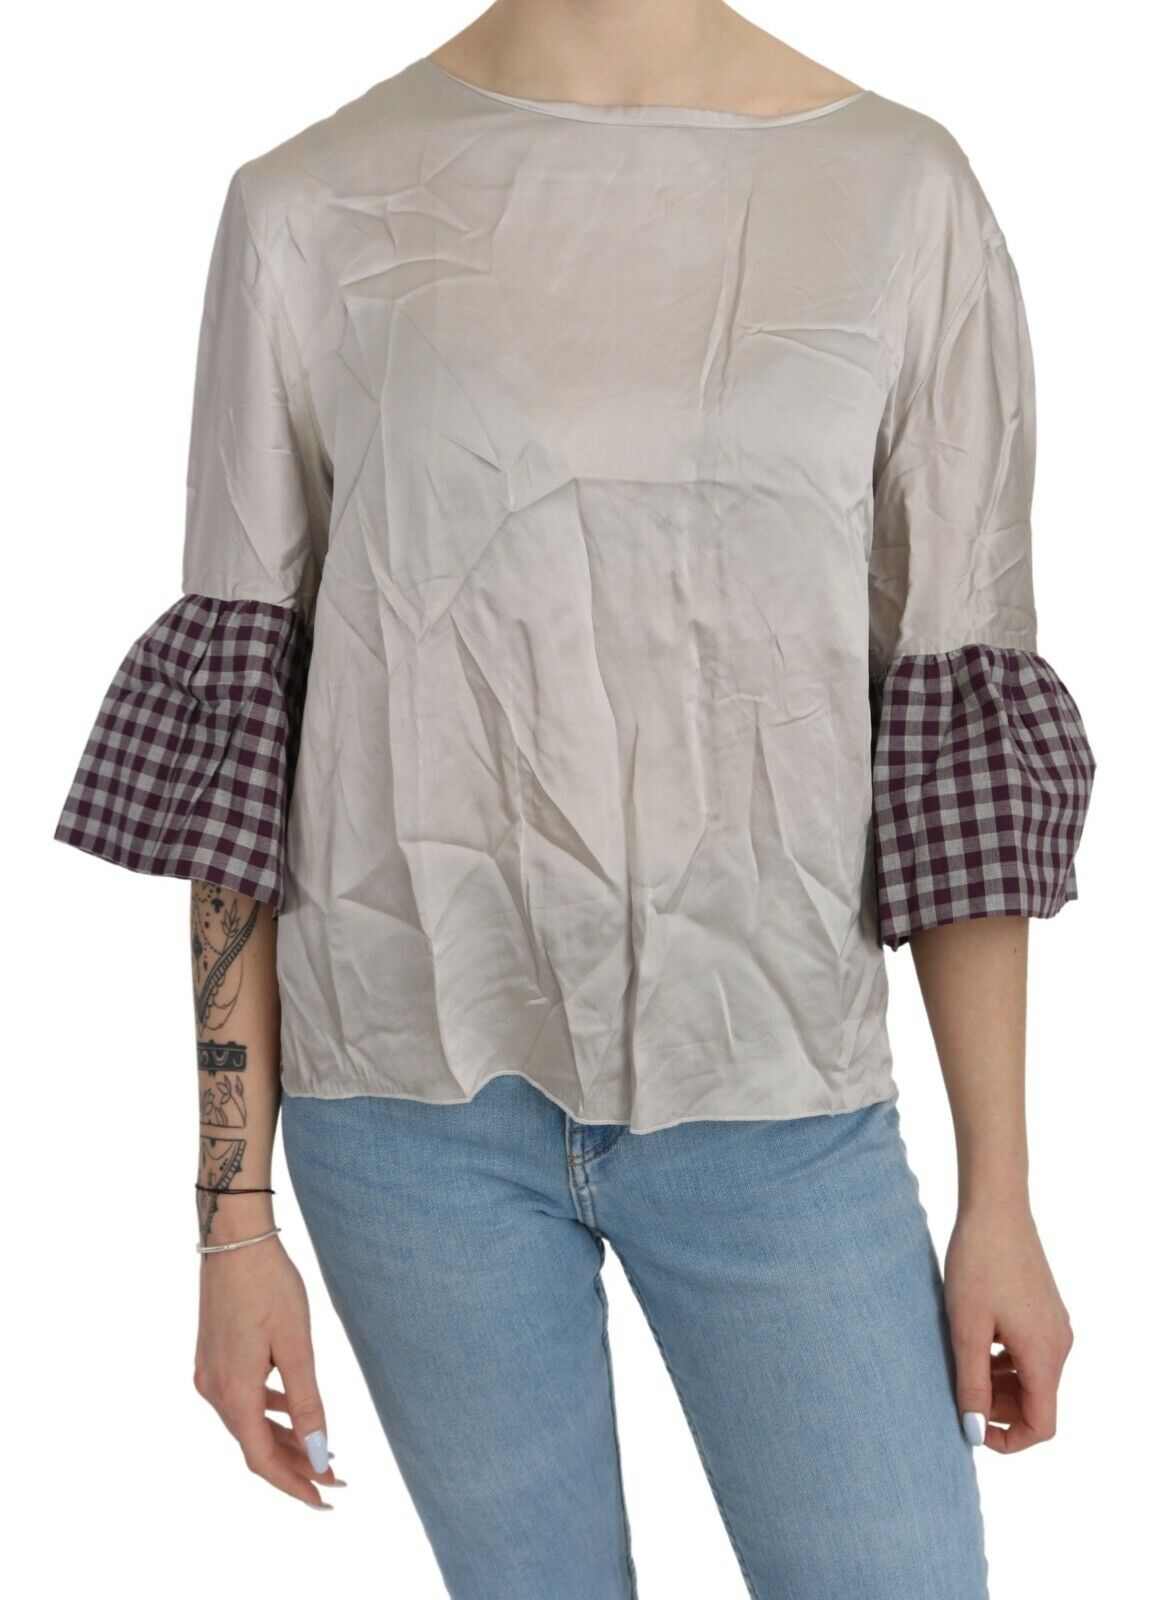 PETER A & CHRONICLES Серая блузка с вырезом «лодочка» и длинными рукавами IT46/US12/XL Рекомендуемая розничная цена 200 долларов США